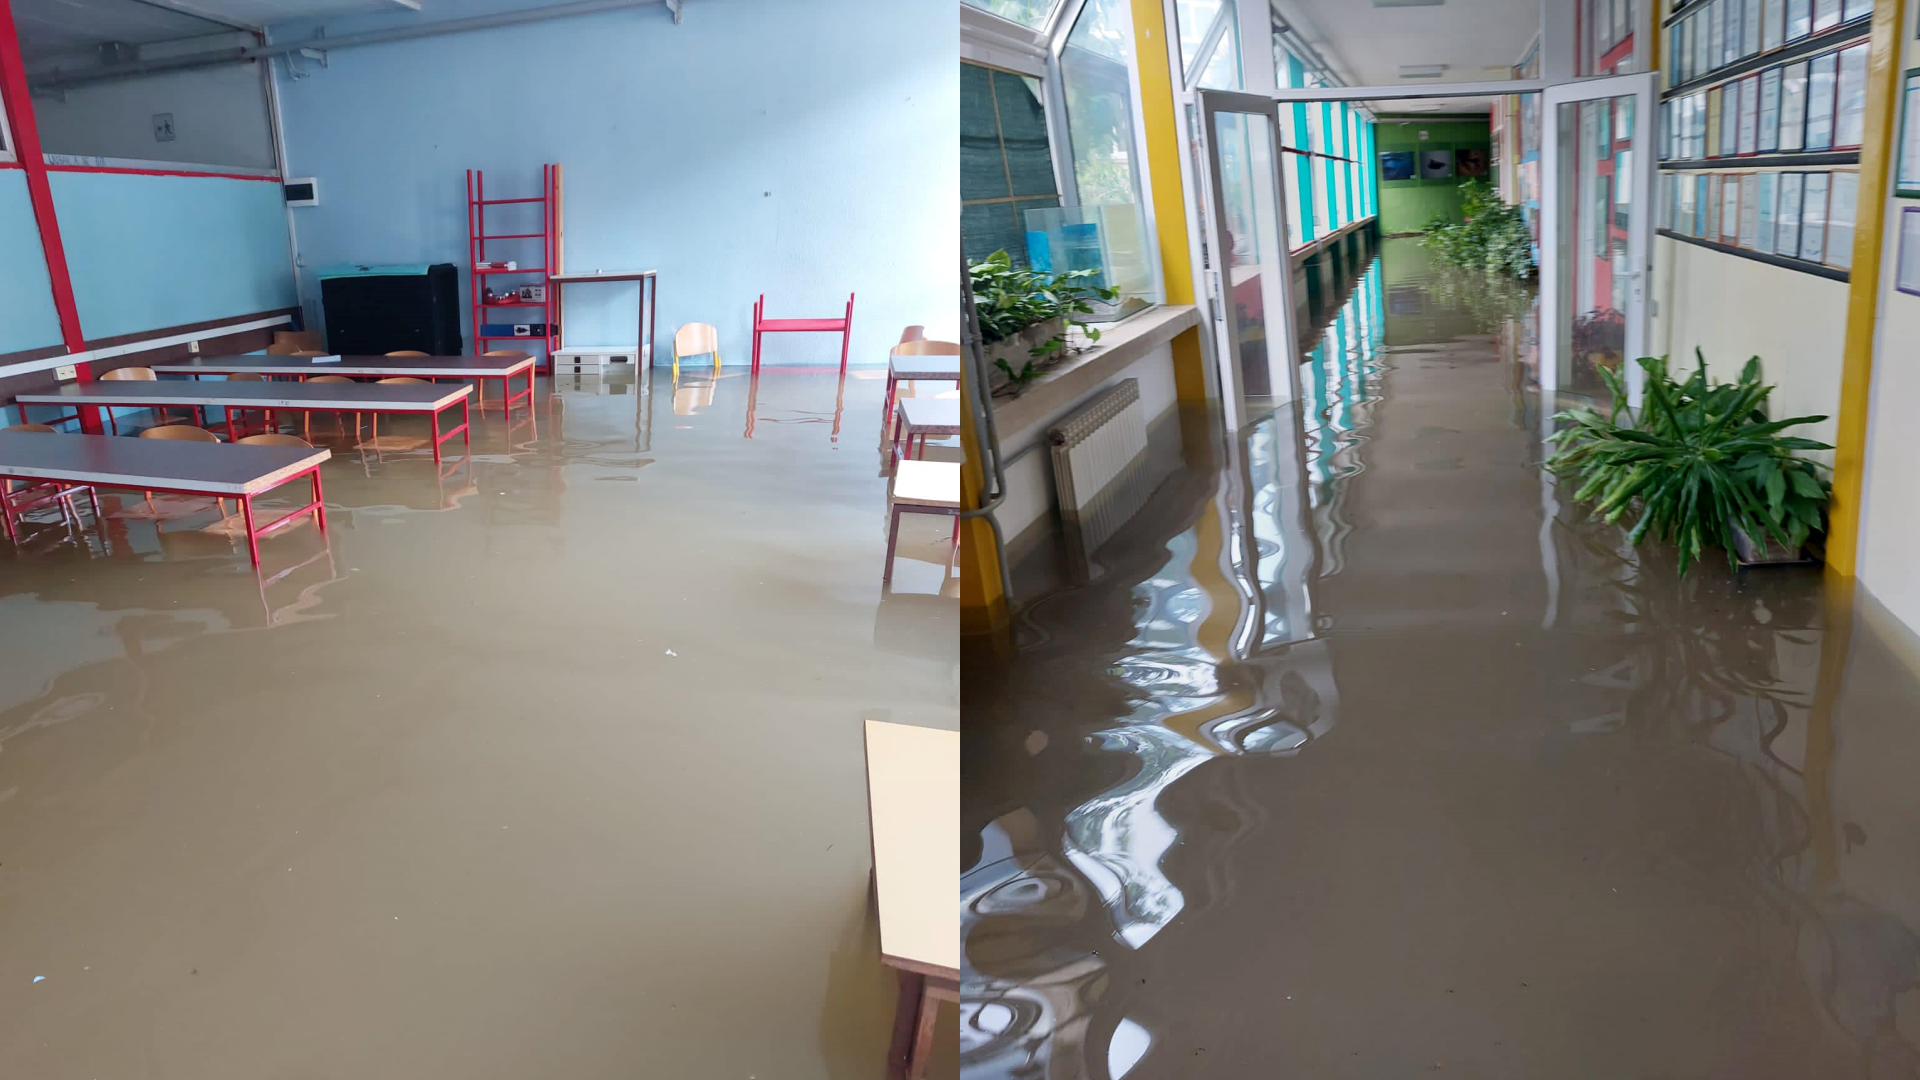 poplavljena učionica i hodnik u srednjoj školi obrovac, voda prelazi sjedala stolica u školskim klupama